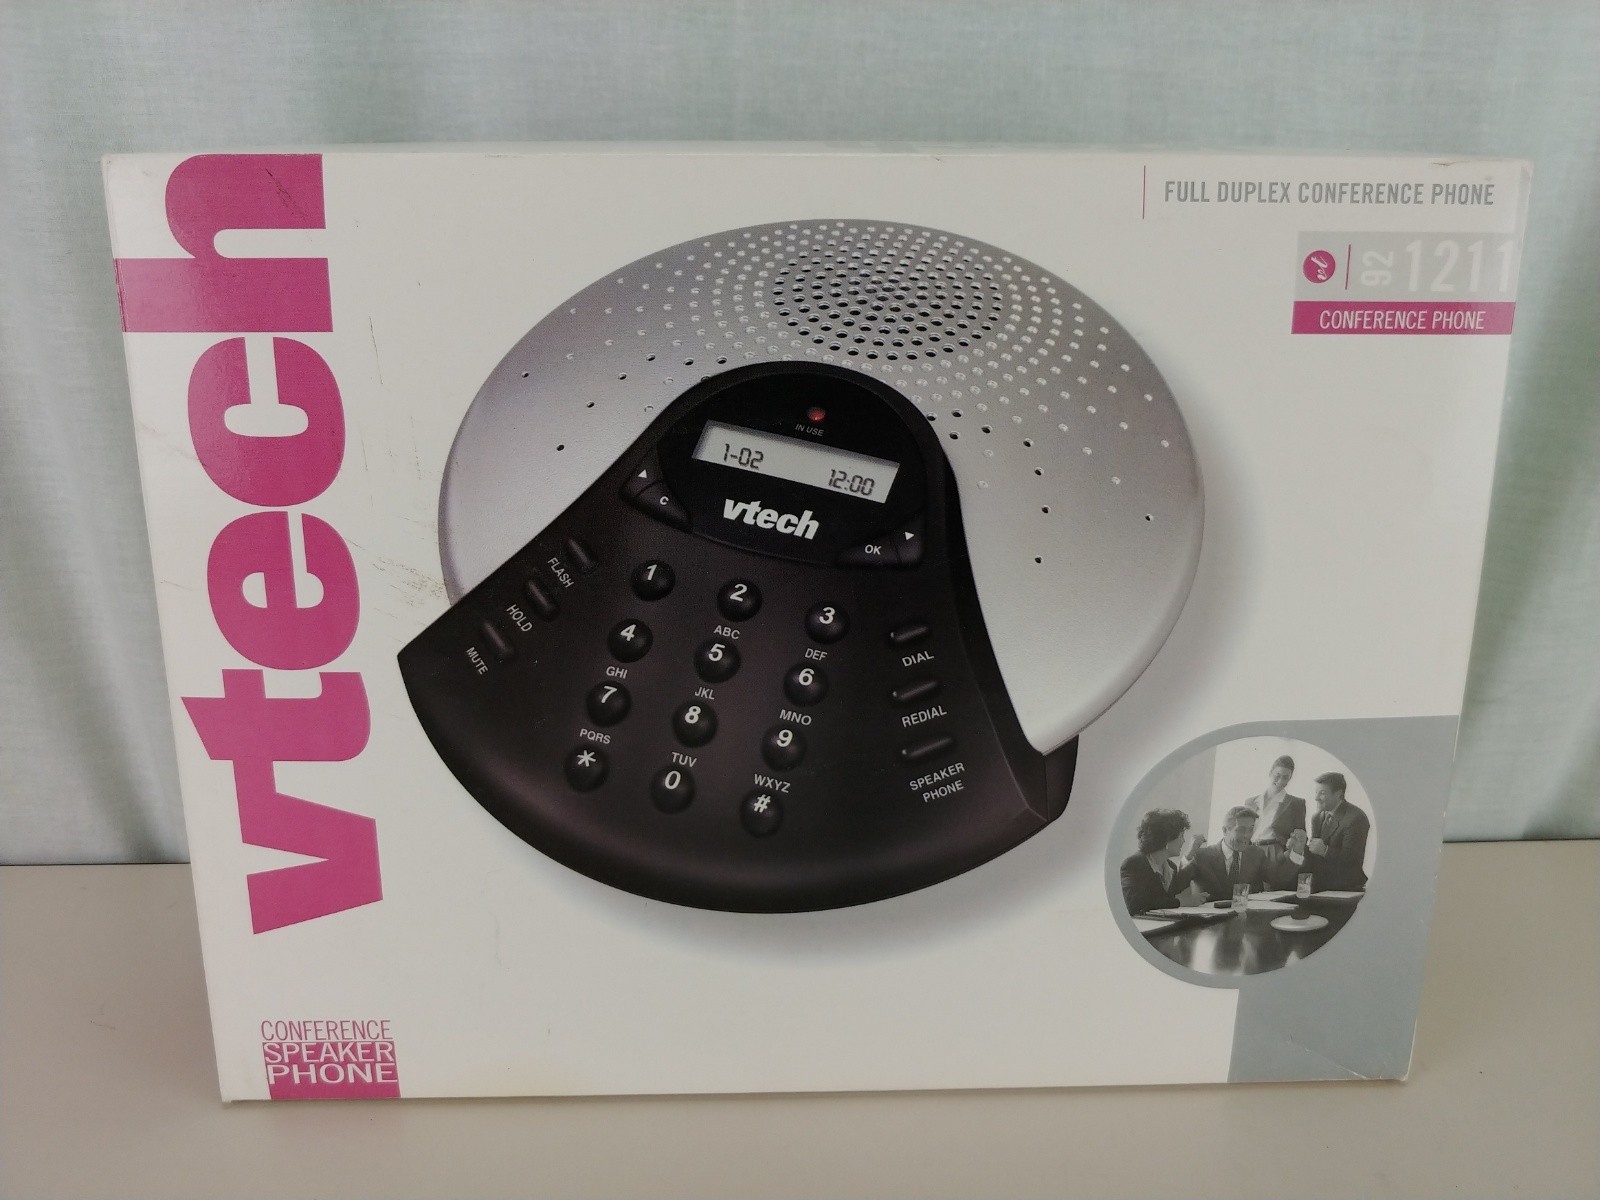 Vtech Full Duplex Conference Speaker Phone VT 92-1211